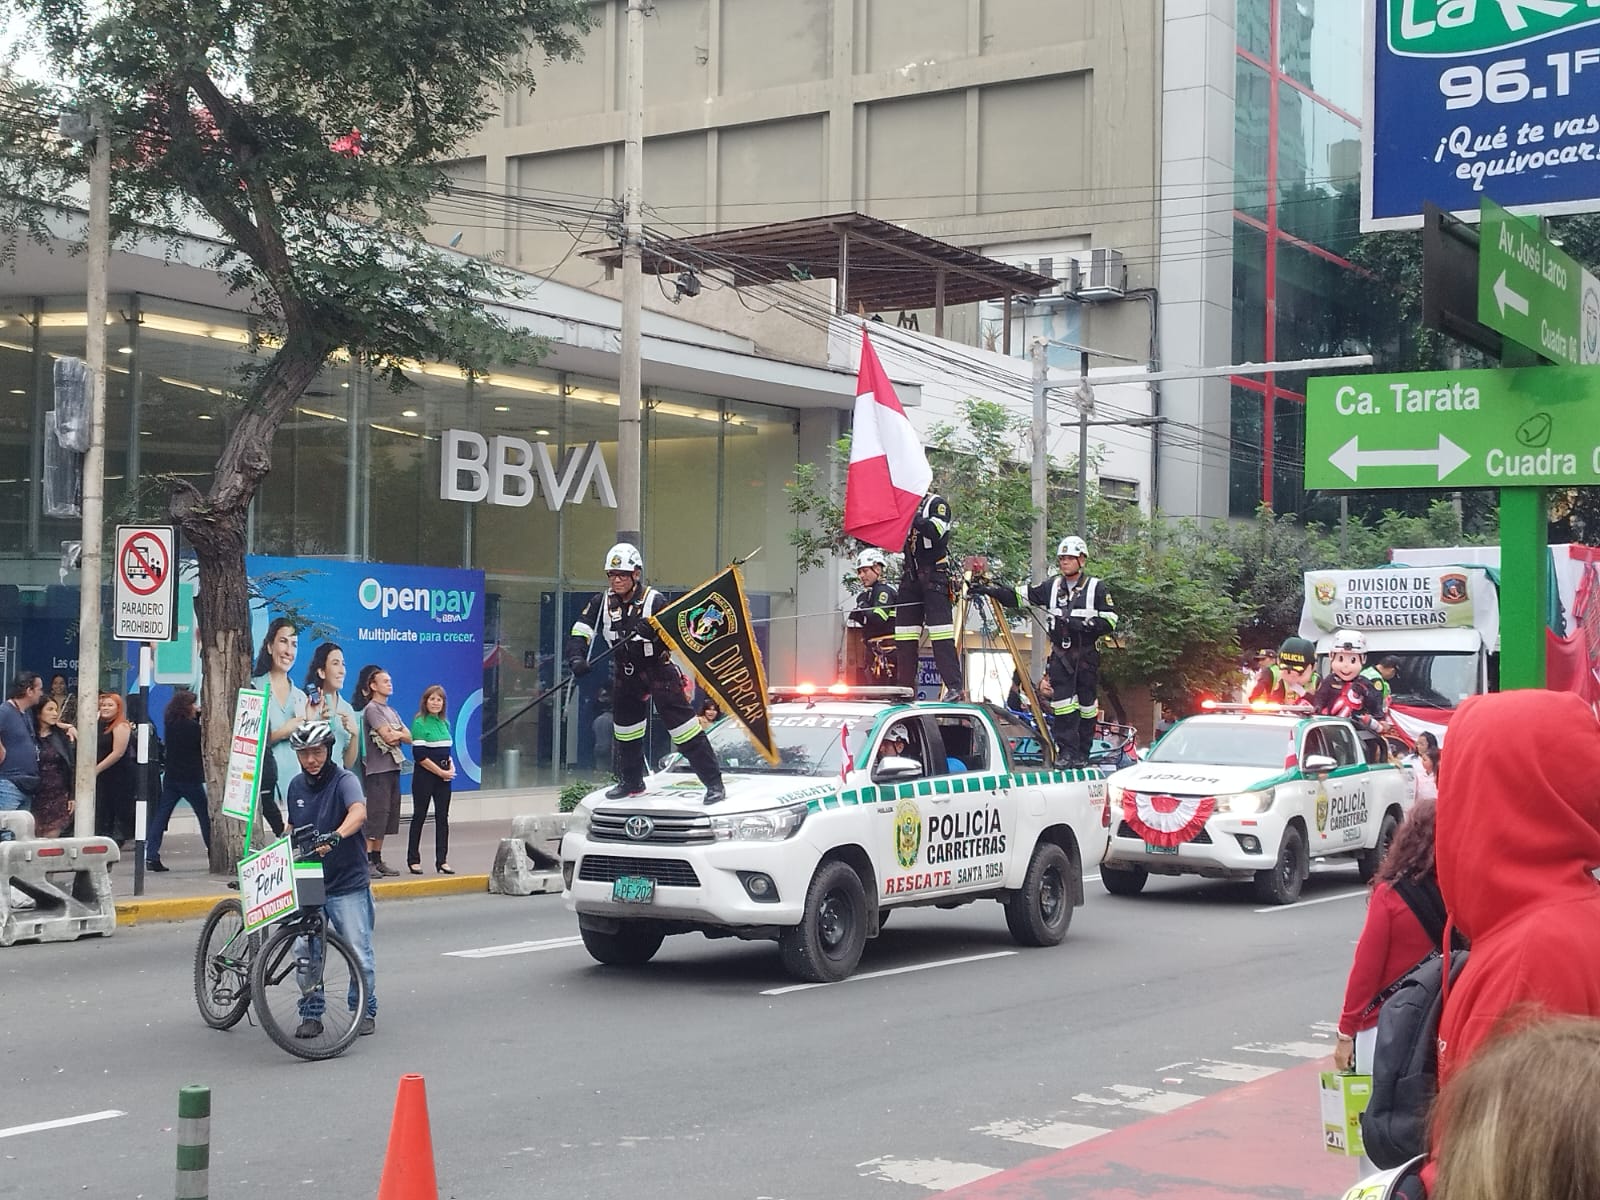 Qué ver y hacer en Miraflores (Lima) - Desfile día de la independencia del Perú (28 de julio) en Miraflores